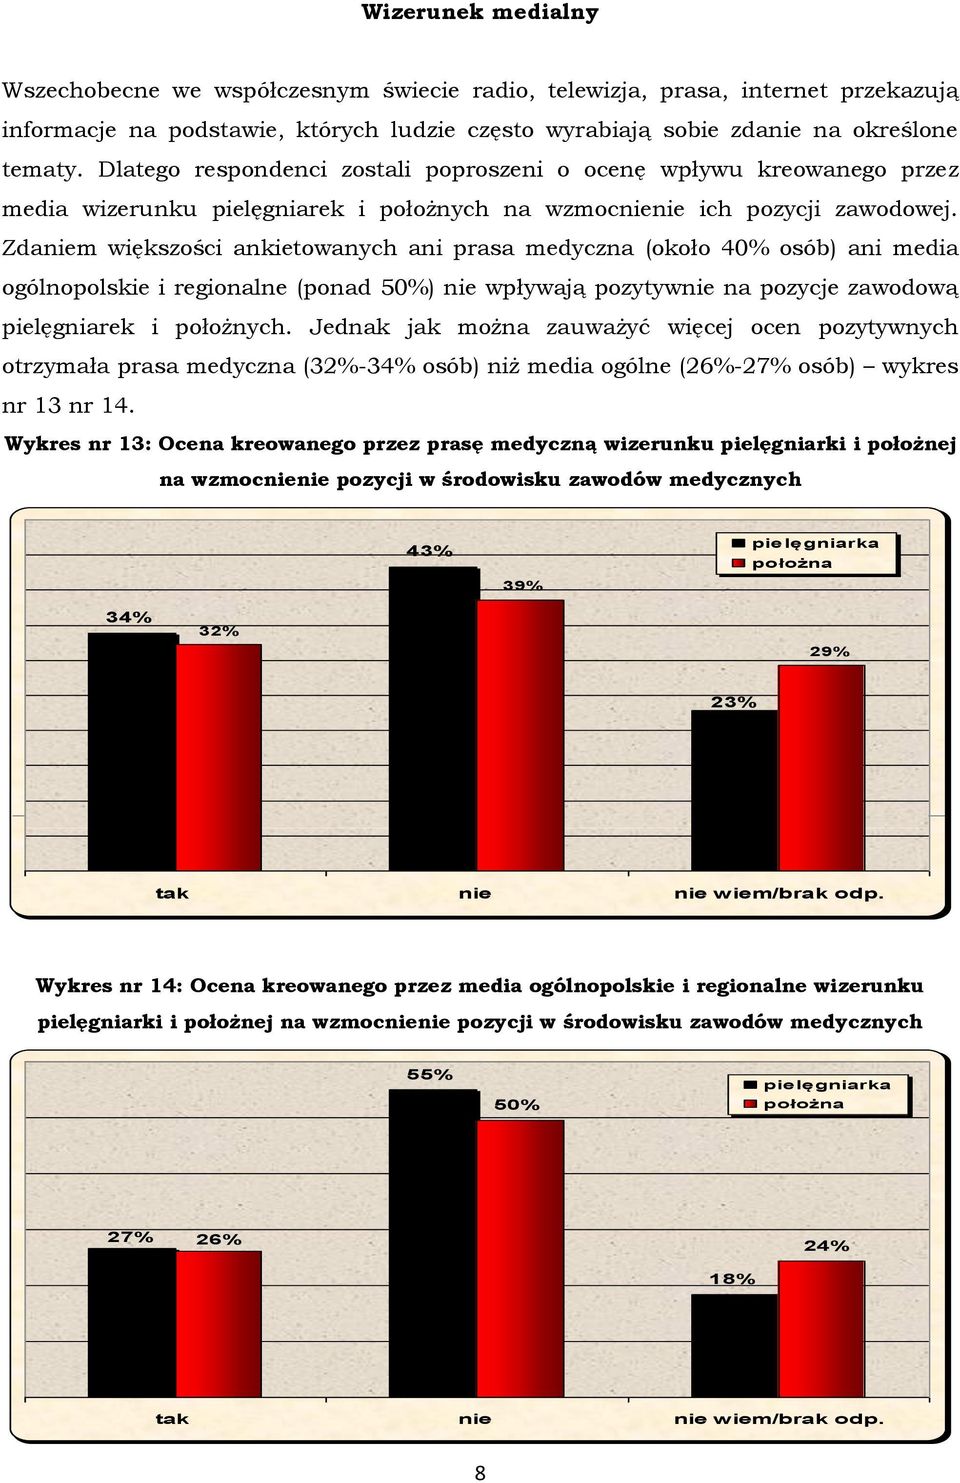 Zdaniem większości ankietowanych ani prasa medyczna (około 40% osób) ani media ogólnopolskie i regionalne (ponad 50%) nie wpływają pozytywnie na pozycje zawodową pielęgniarek i położnych.